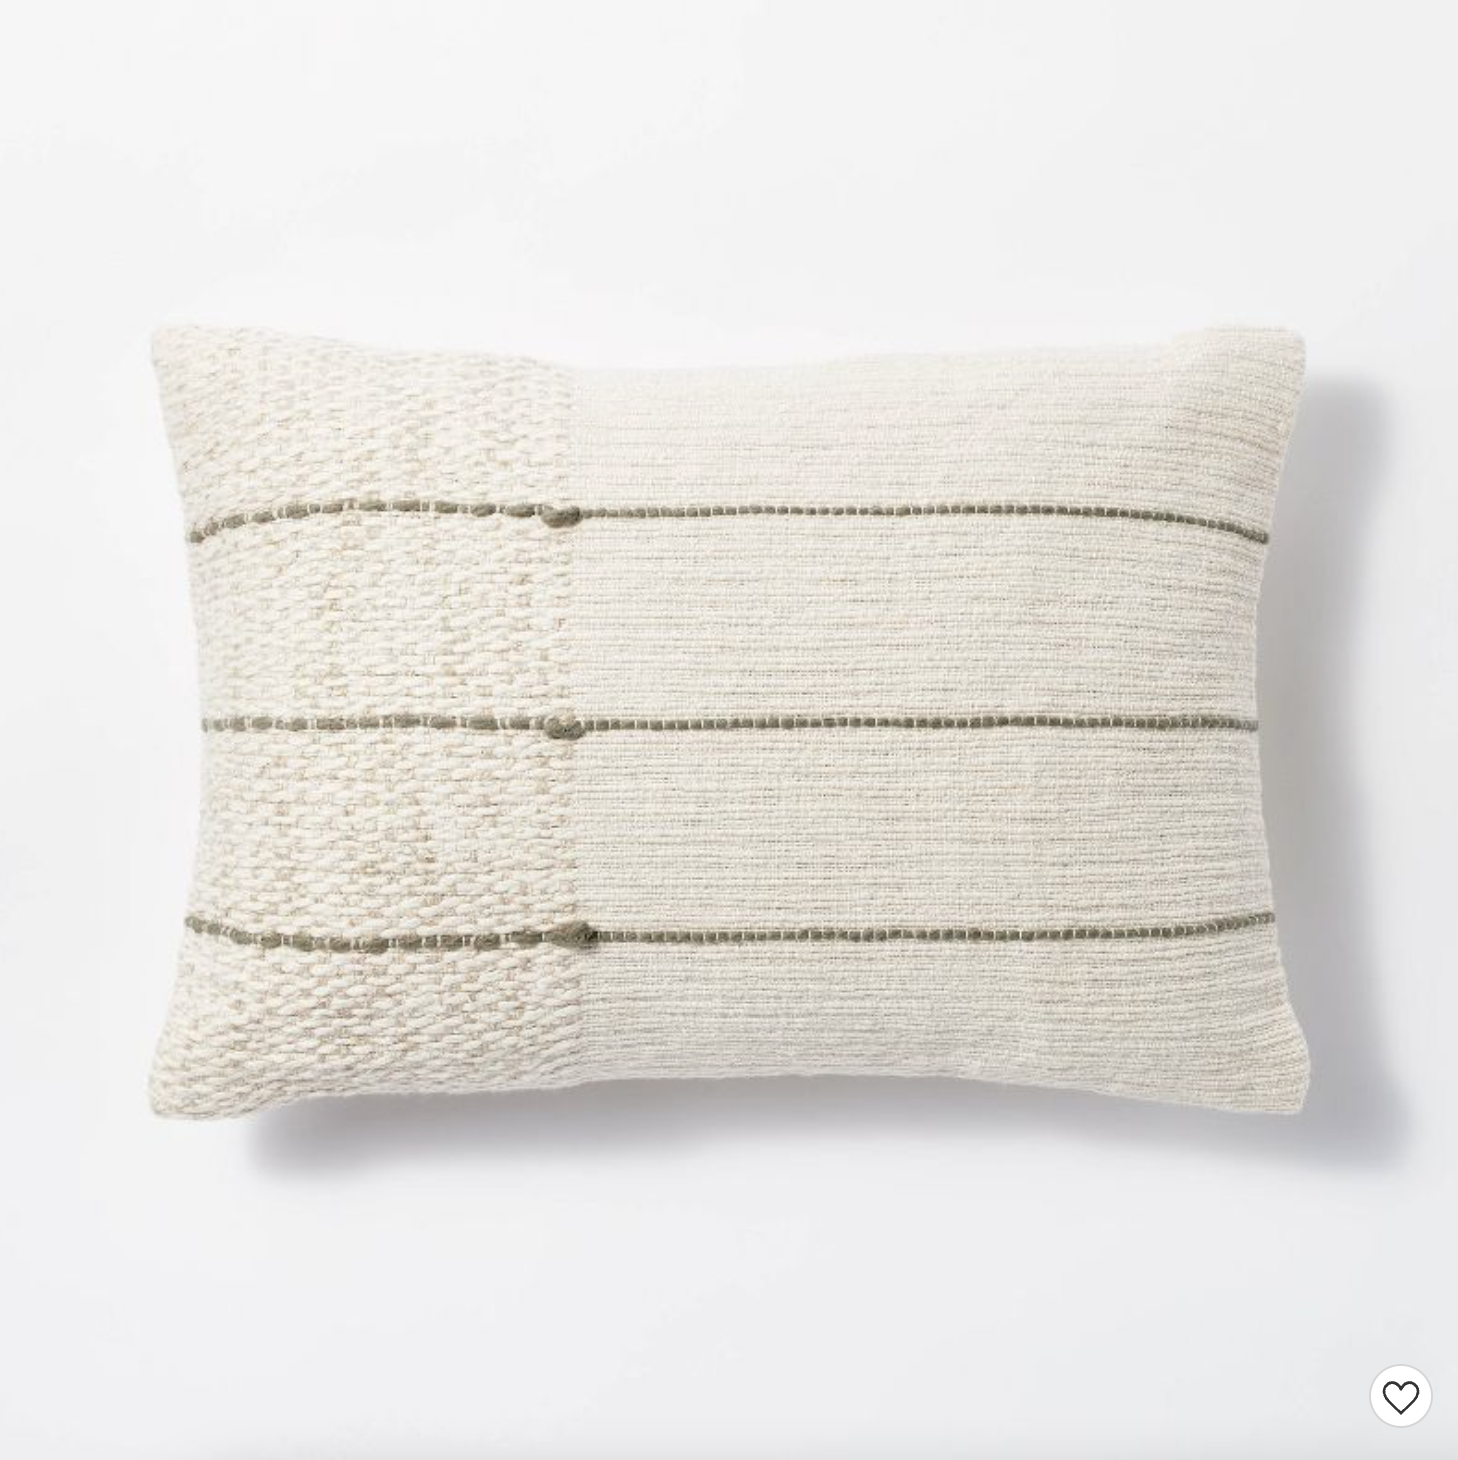 Textured asymmetrical pillow